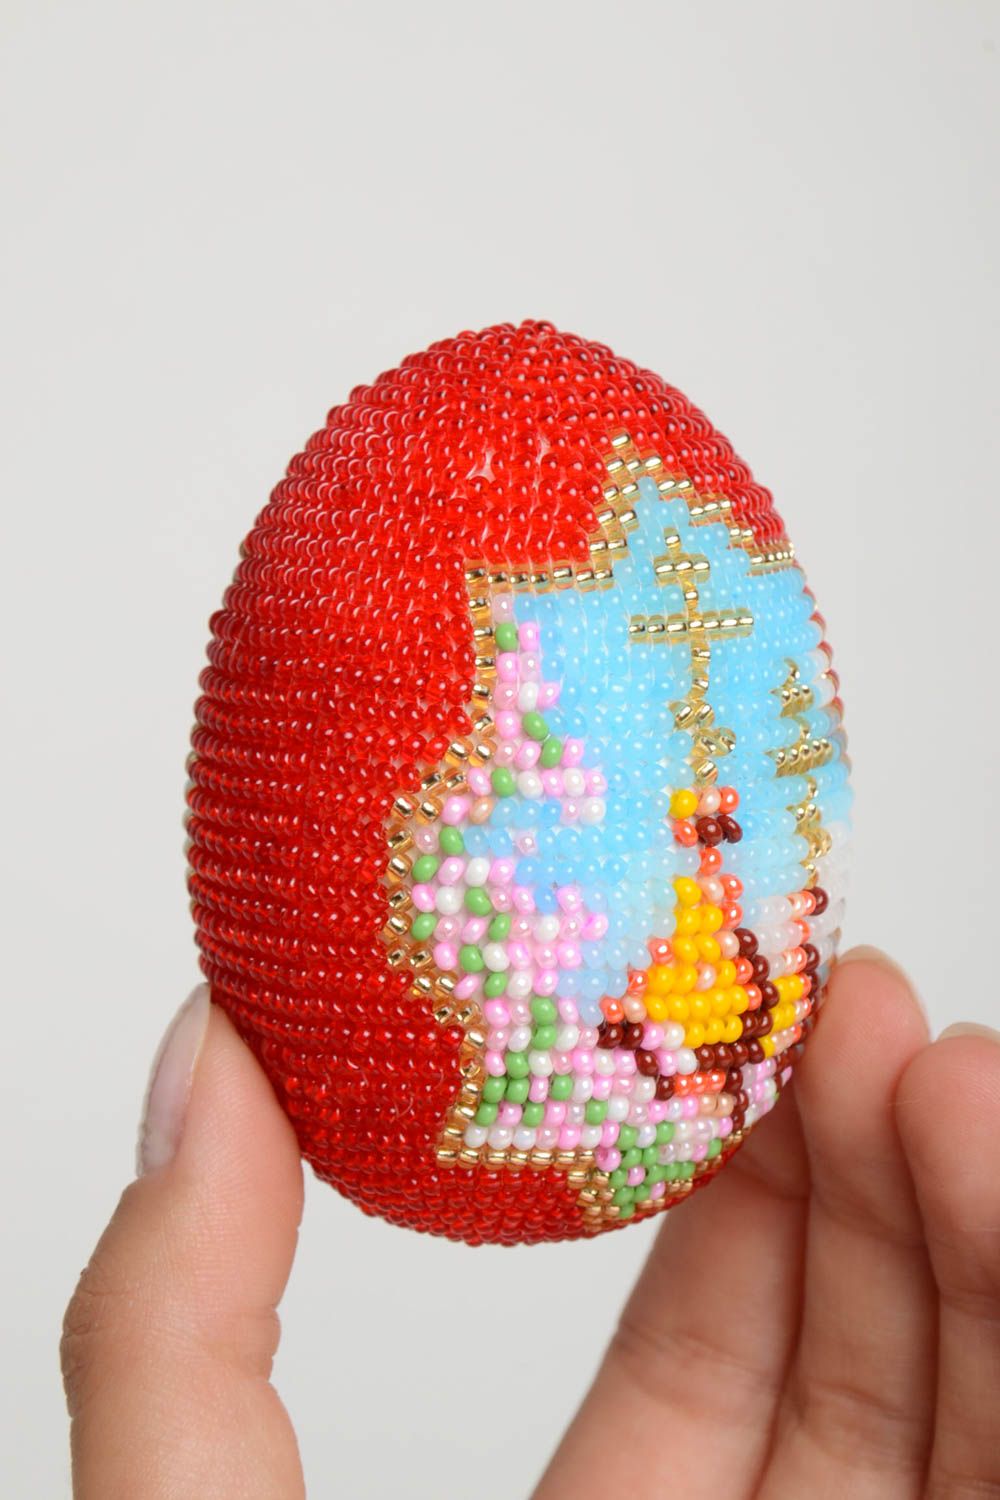 Huevo artesanal original y pintado elemento decorativo regalo para Pascua foto 5